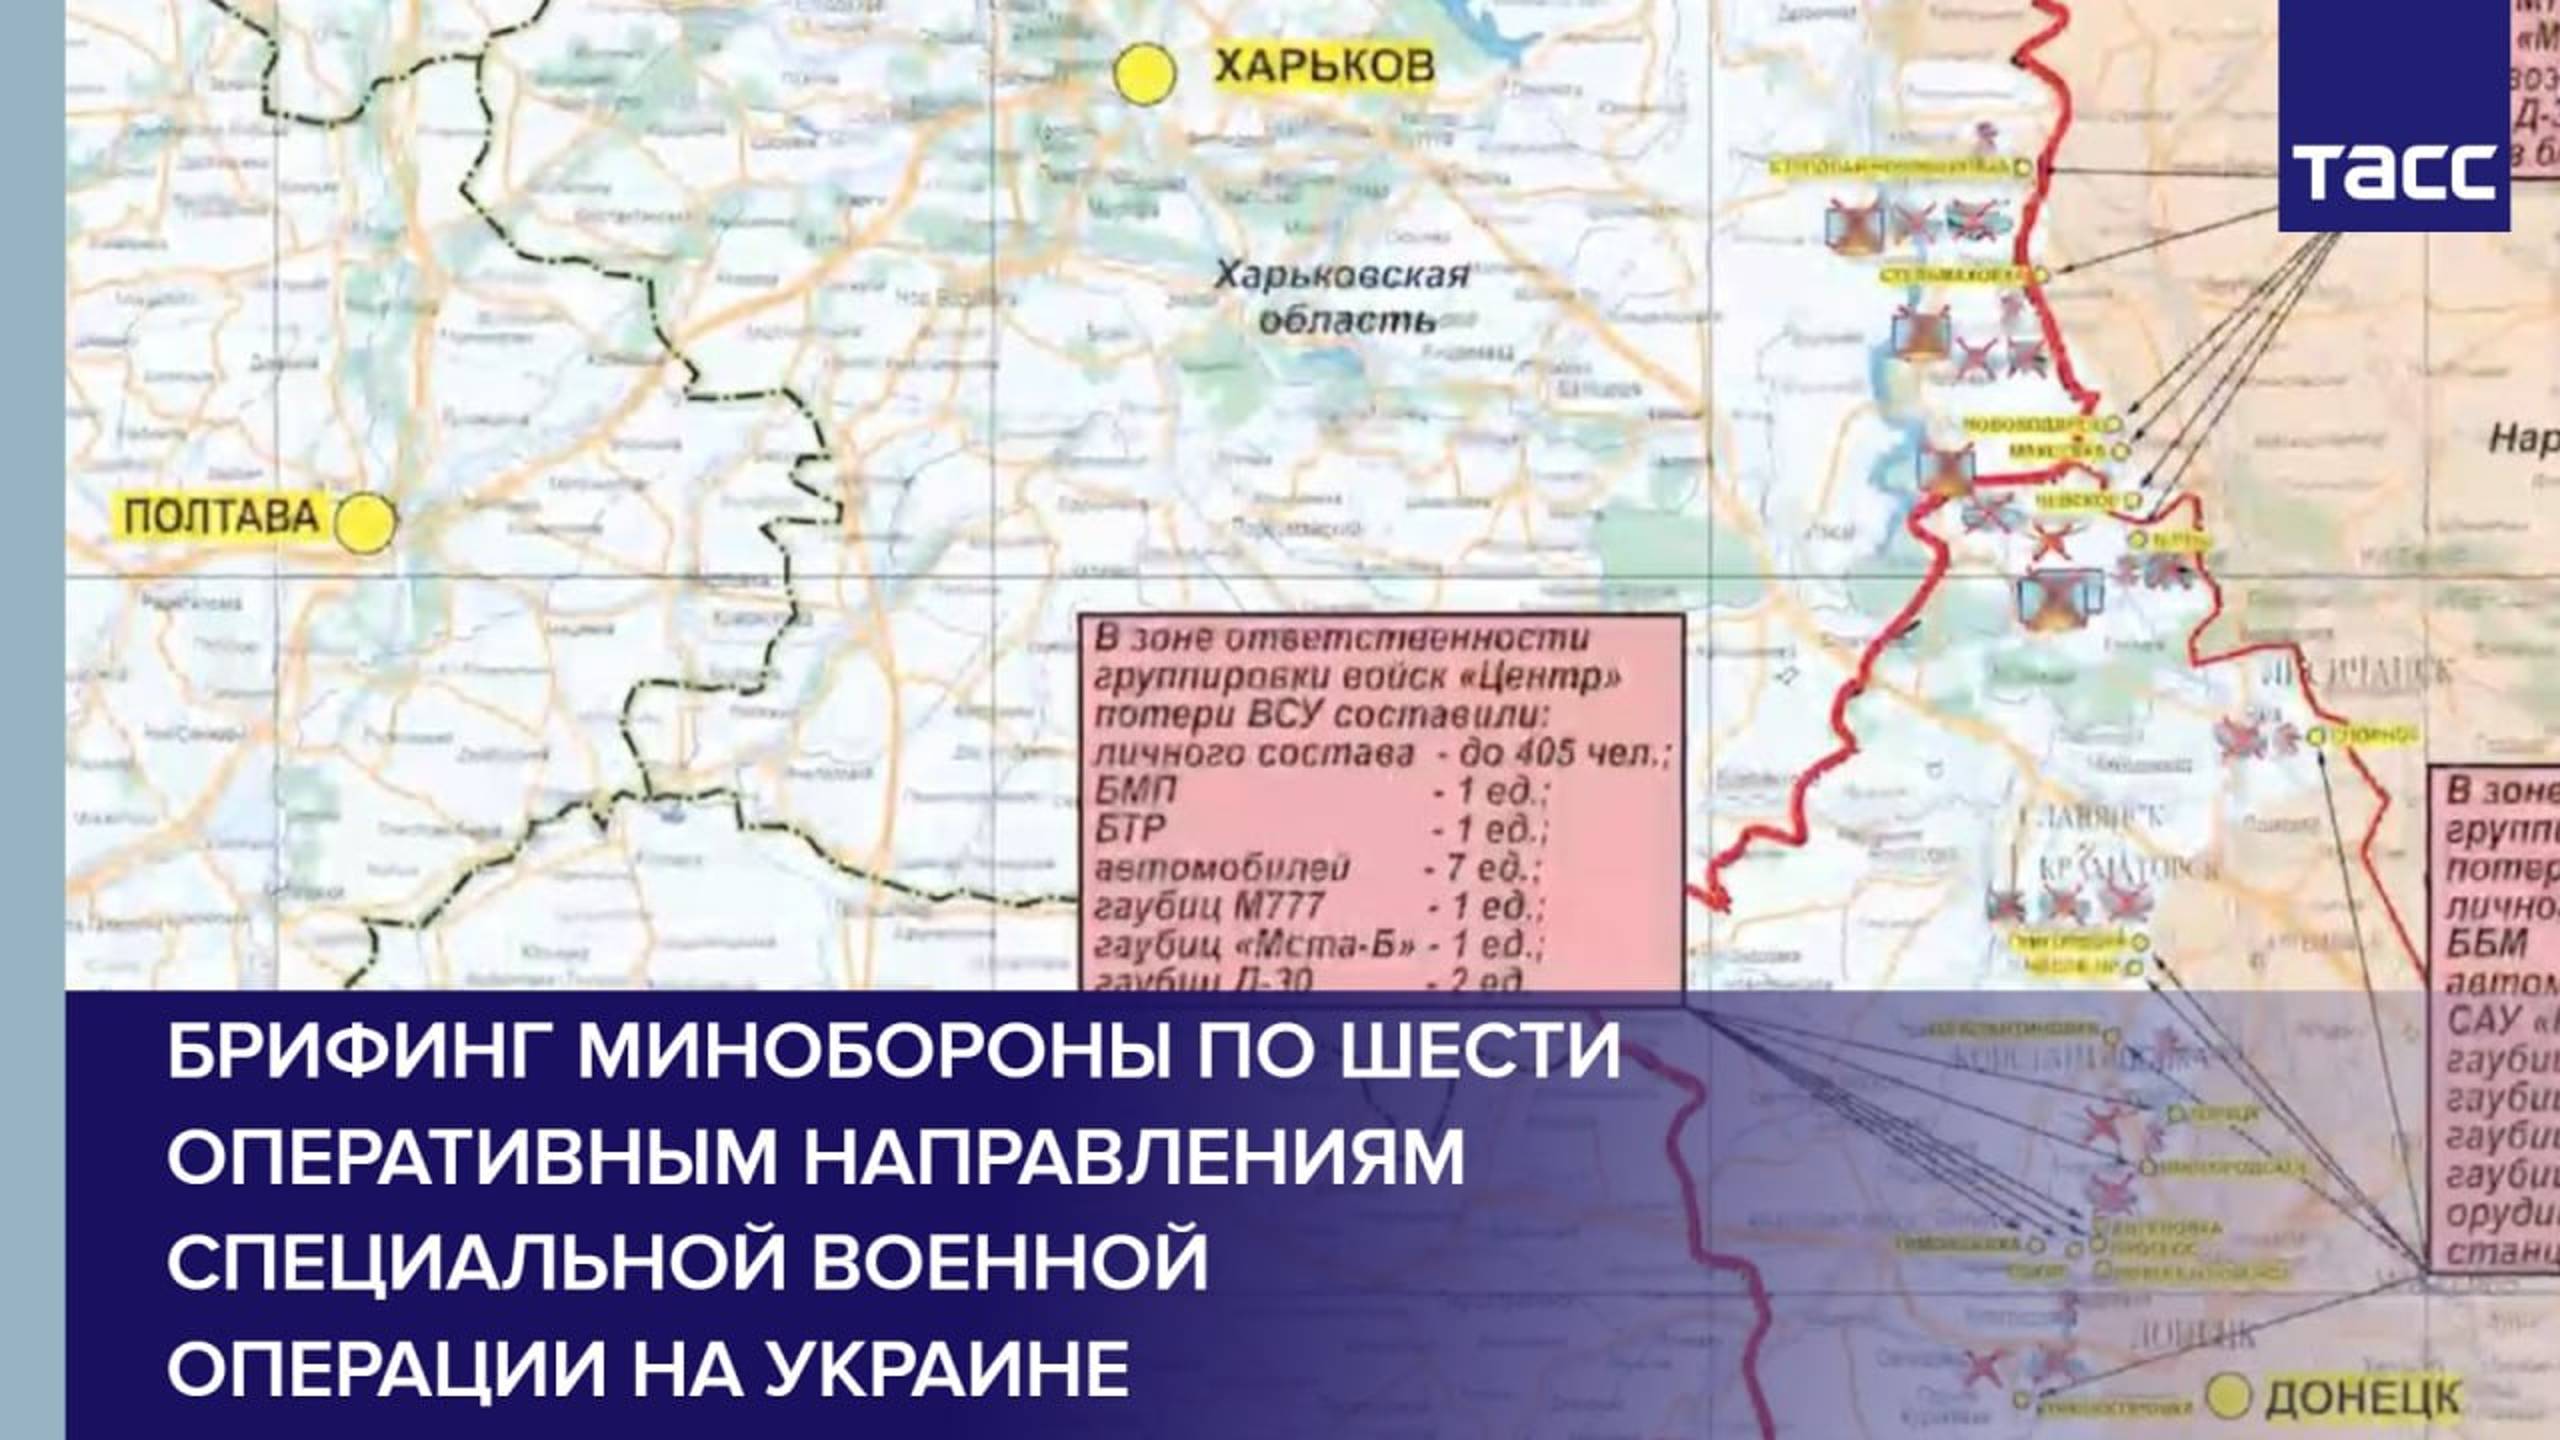 Брифинг Минобороны по шести оперативным направлениям специальной военной операции на Украине.